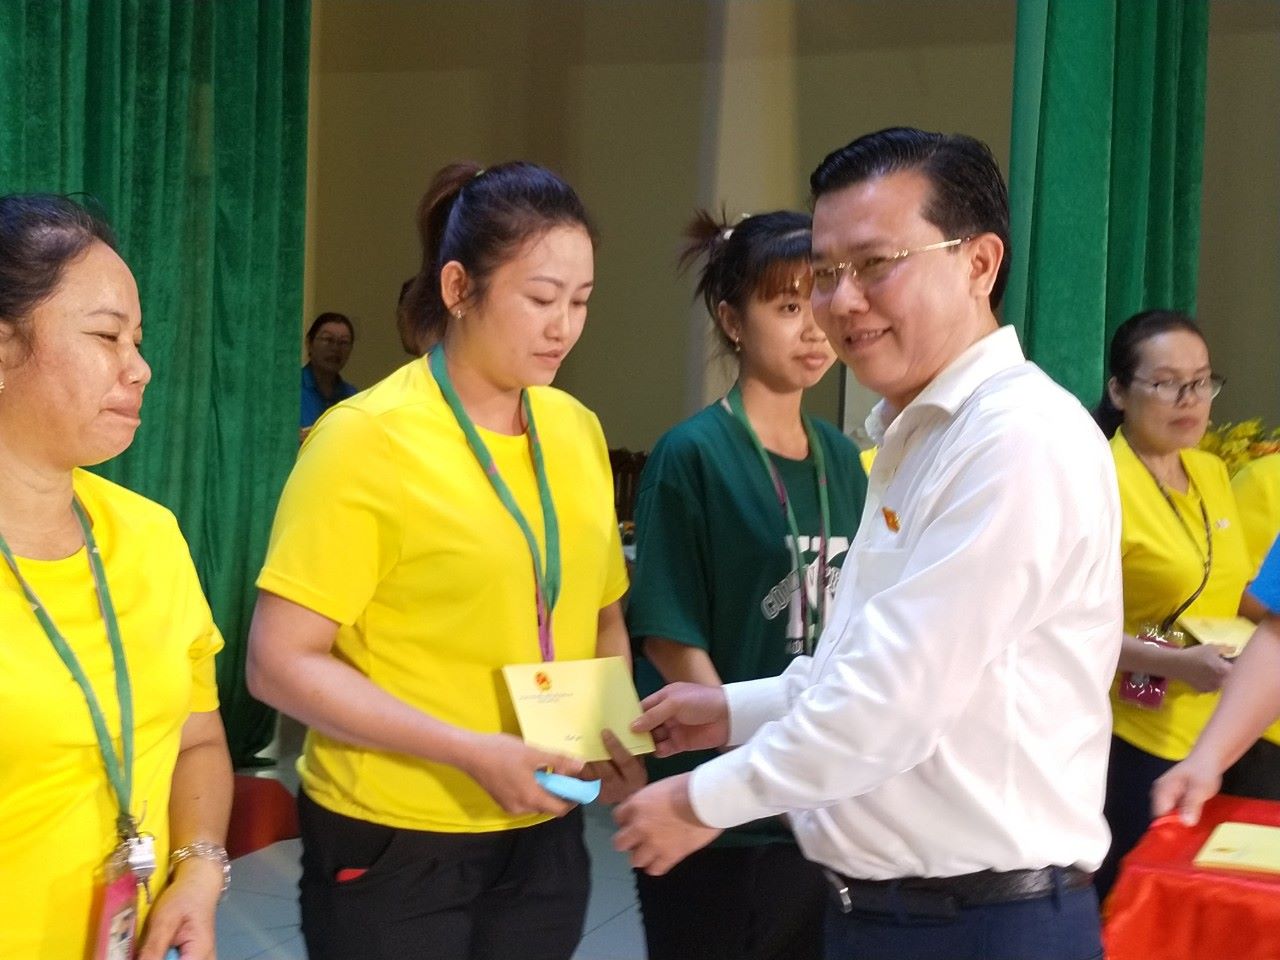 Ông Nguyễn Thanh Hải - Trưởng đoàn ĐBQH tỉnh Long An - tặng quà cho CNLĐ tại buổi tiếp xúc. Ảnh: Kỳ Quan